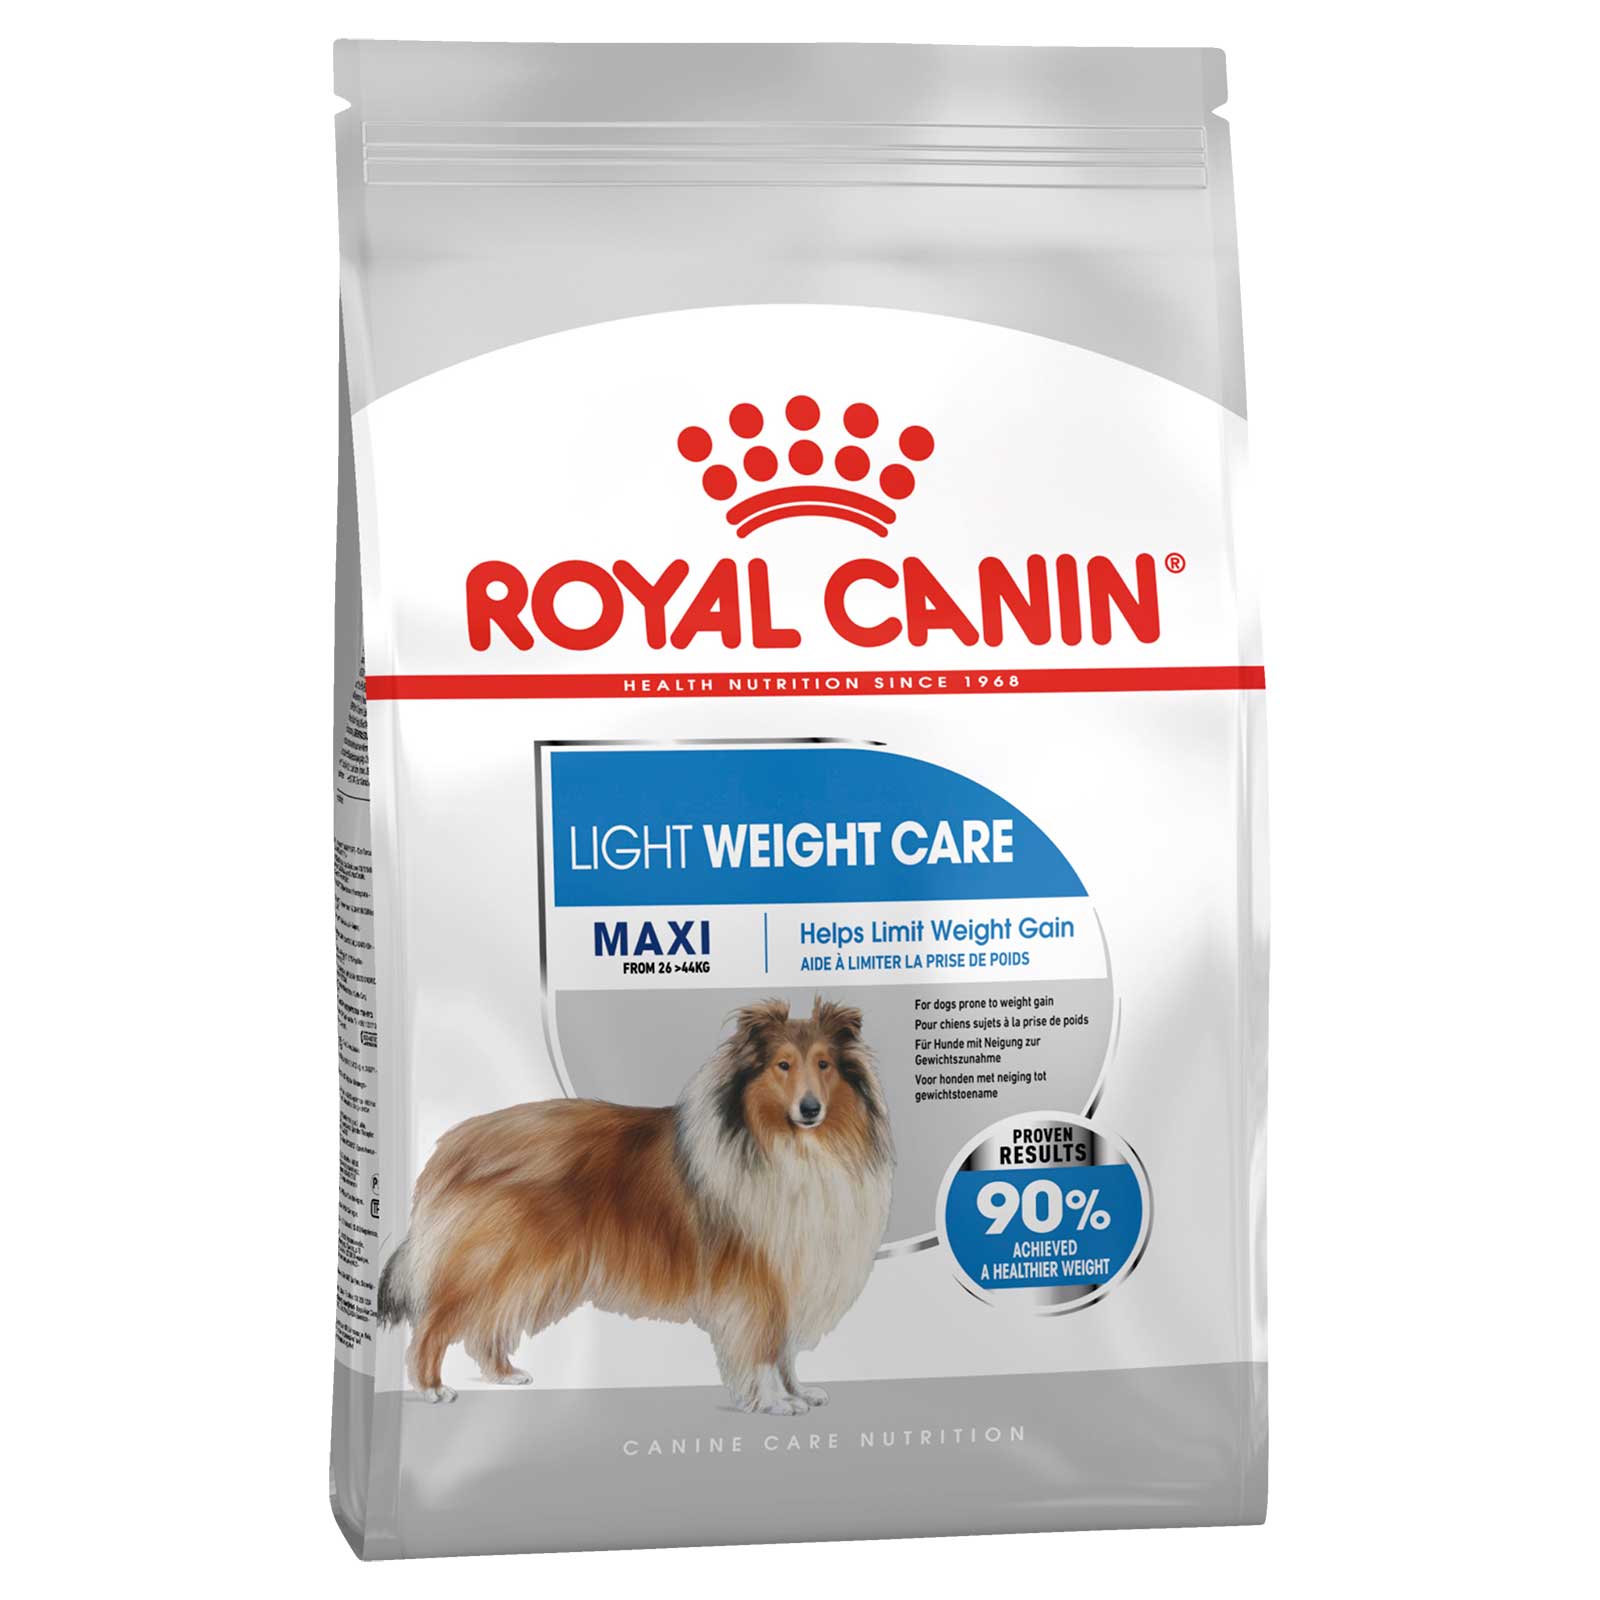 Royal Canin Dog Food Light Weight Care Maxi